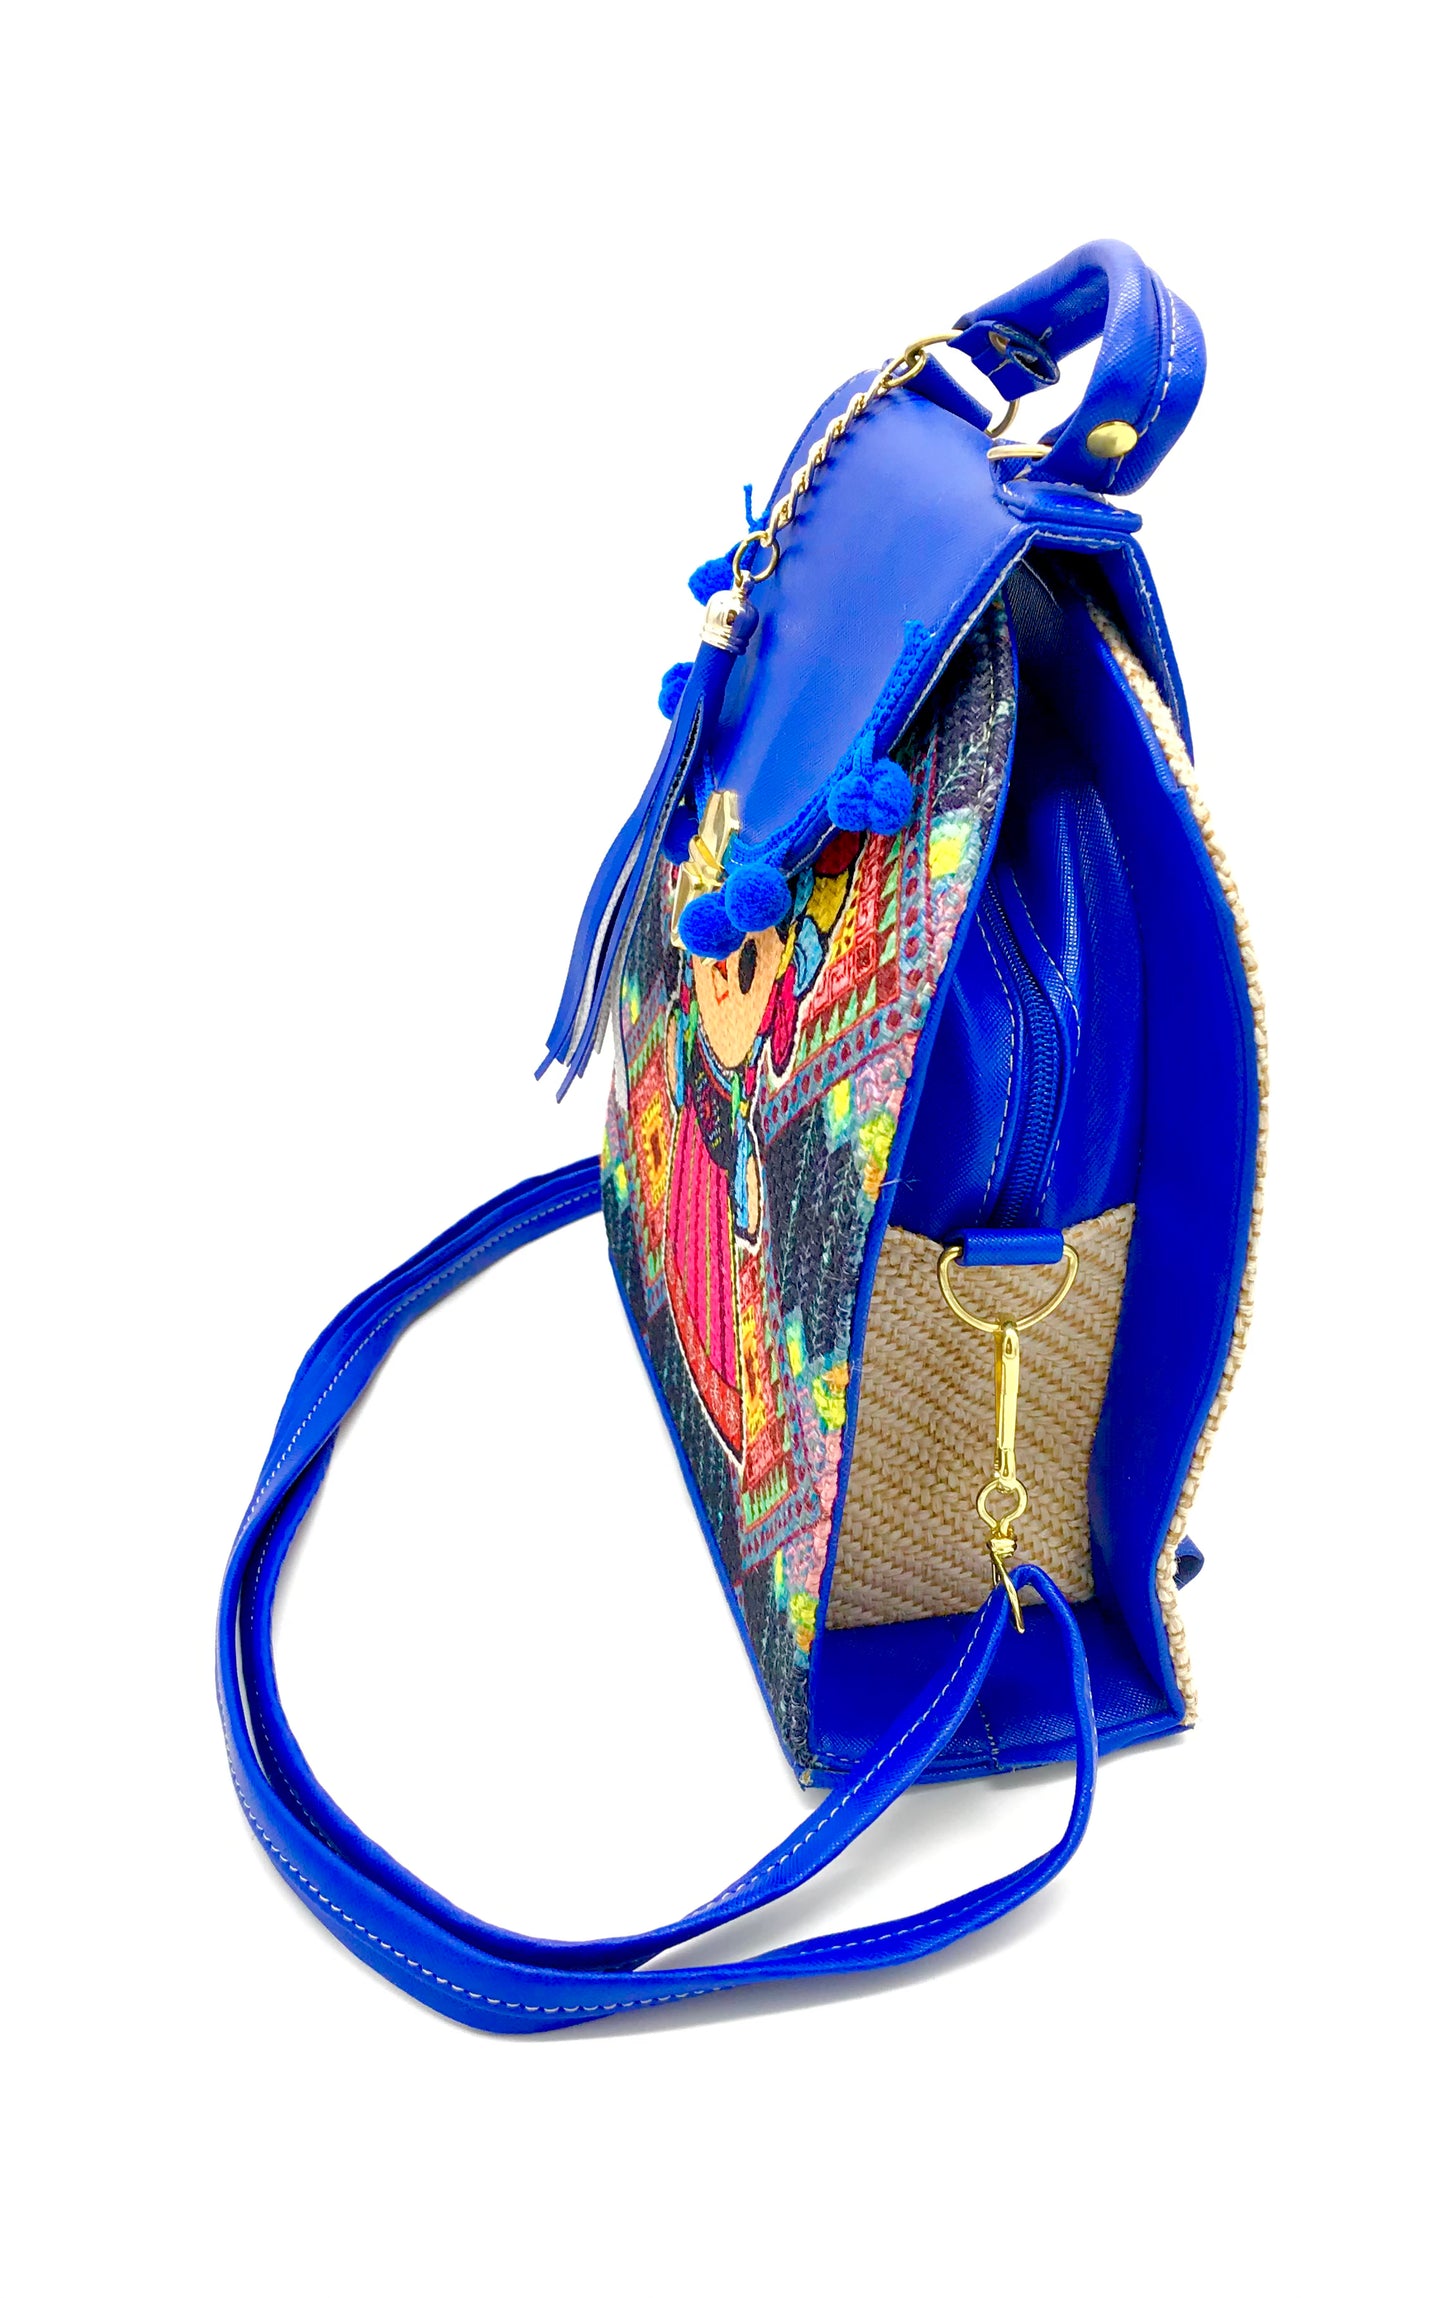 Handbag and Backpack Chiapaneco Embroidery